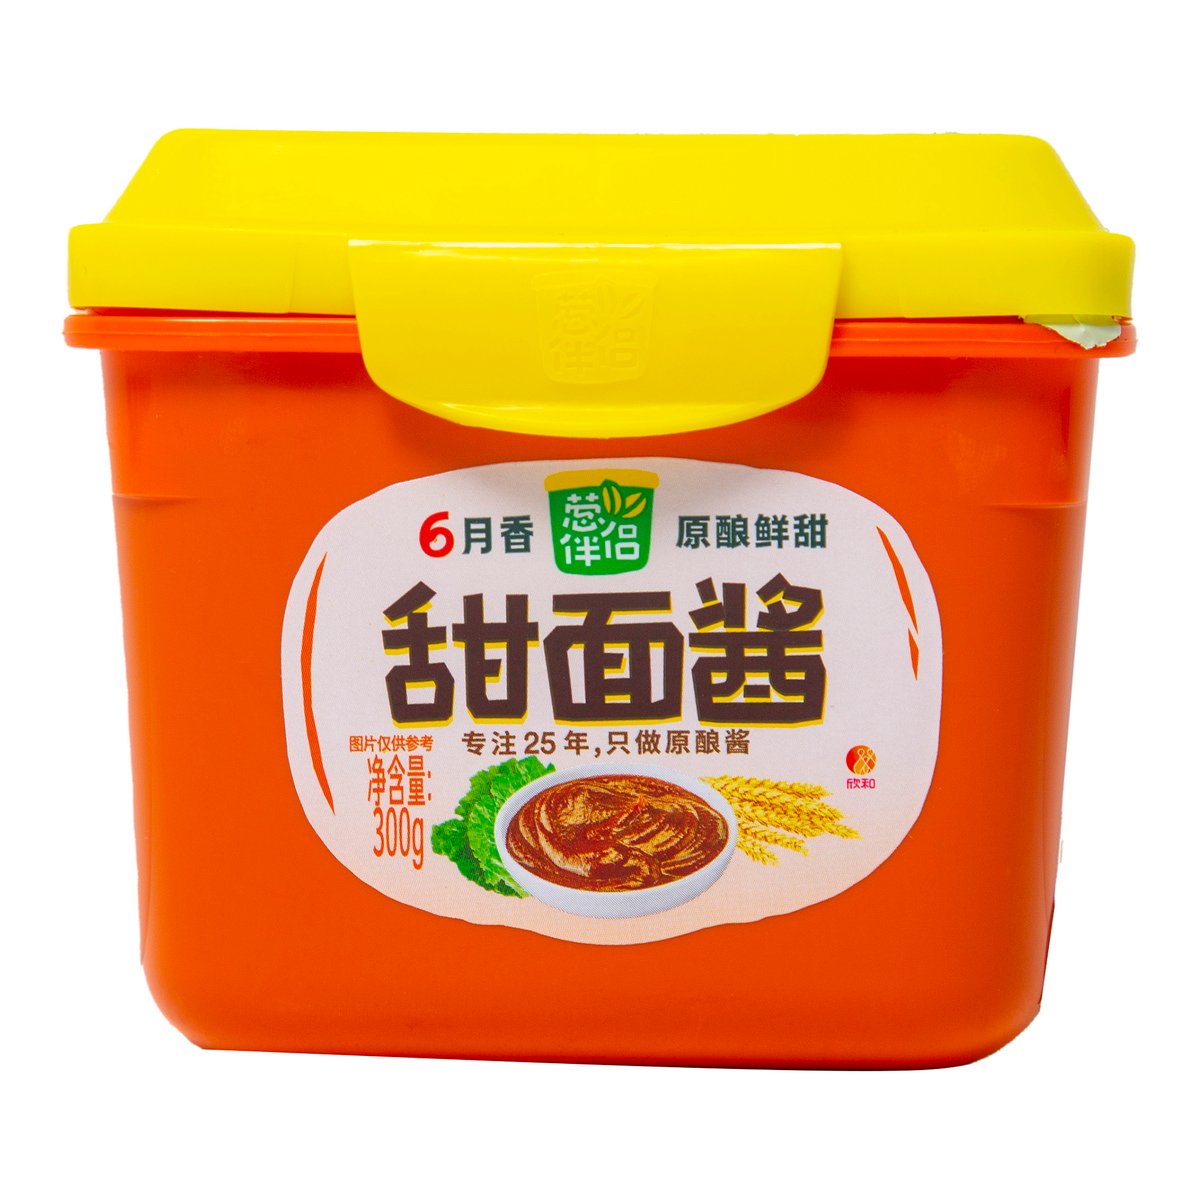 CBL Sweet Condiment Noodle 300 g